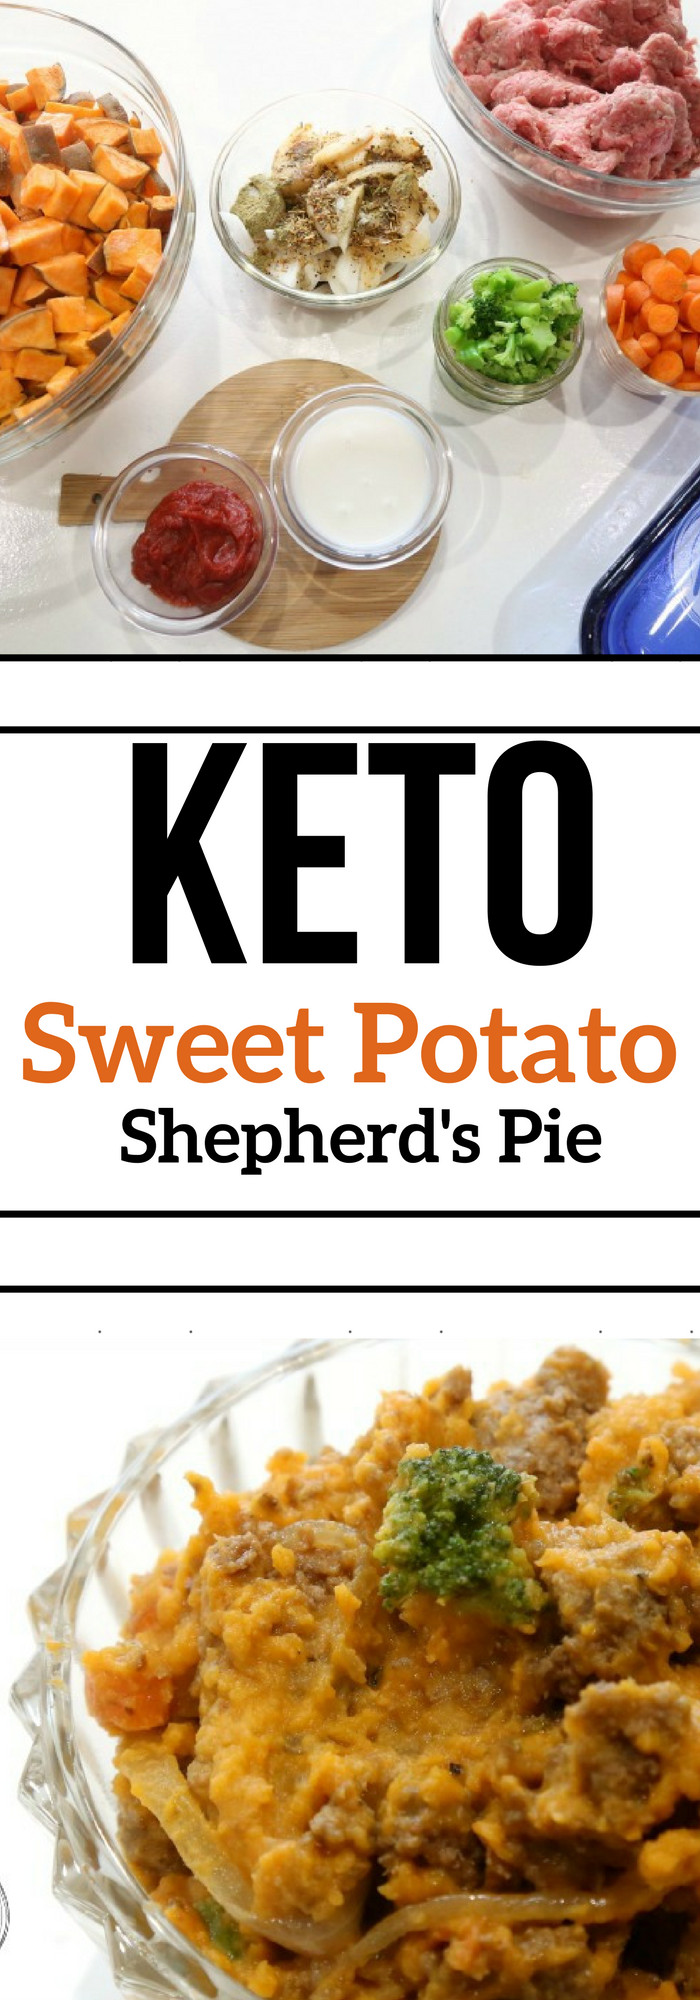 Low Fat Keto Diet
 Keto Shepherd s Pie Low Carb Recipe • Keto Size Me